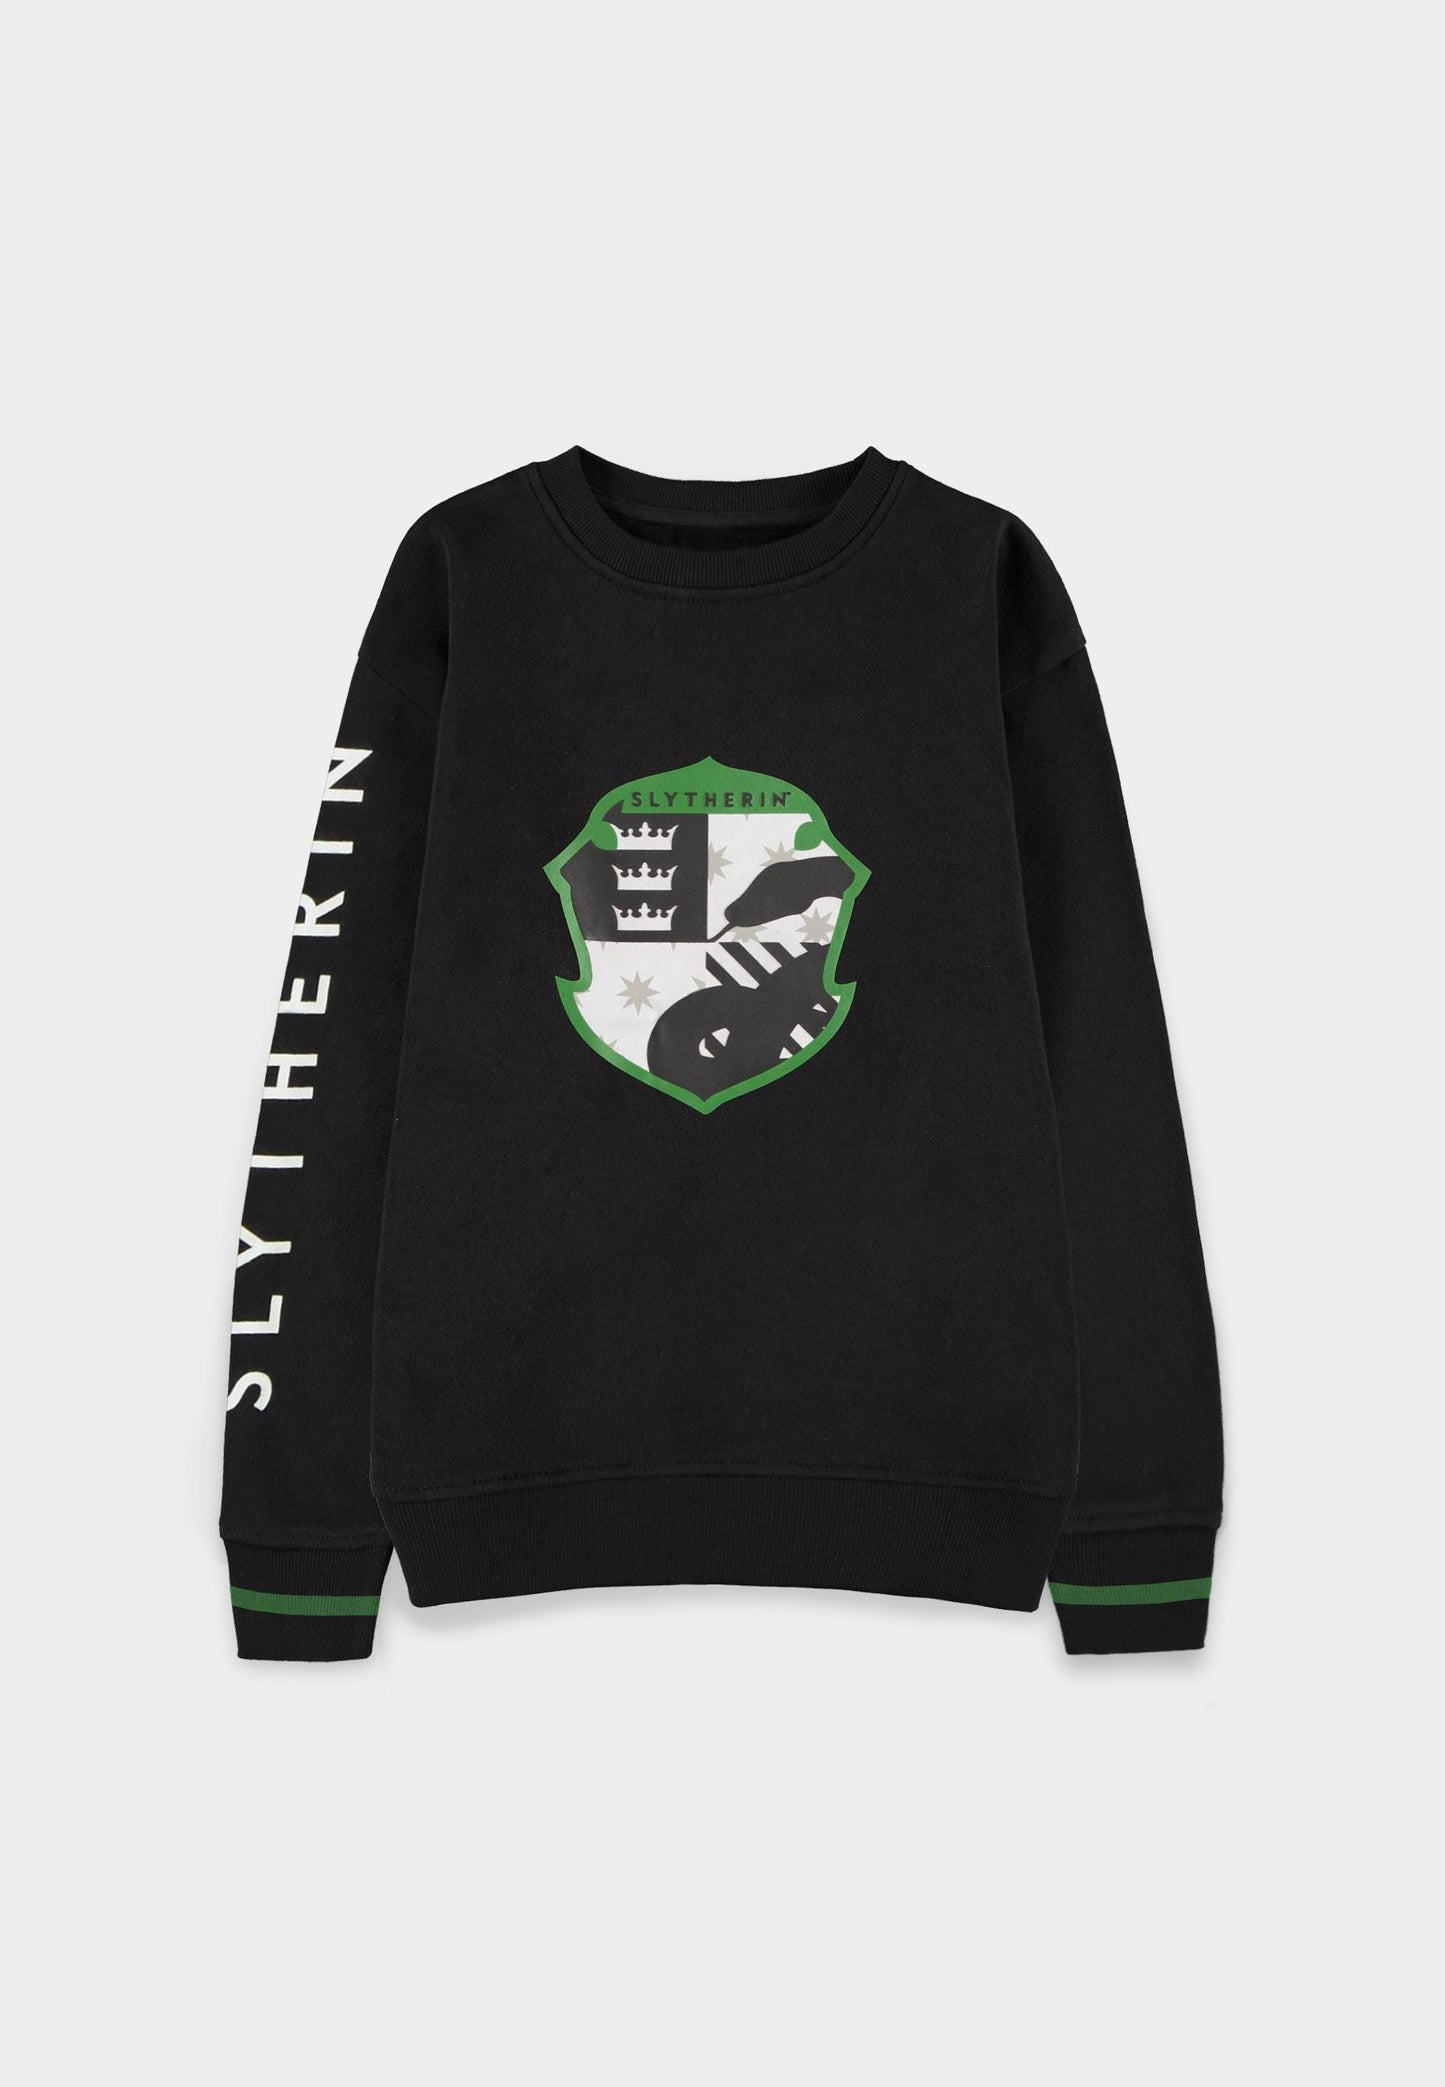 Harry Potter - Slytherin Emblem Boys Crew Sweater